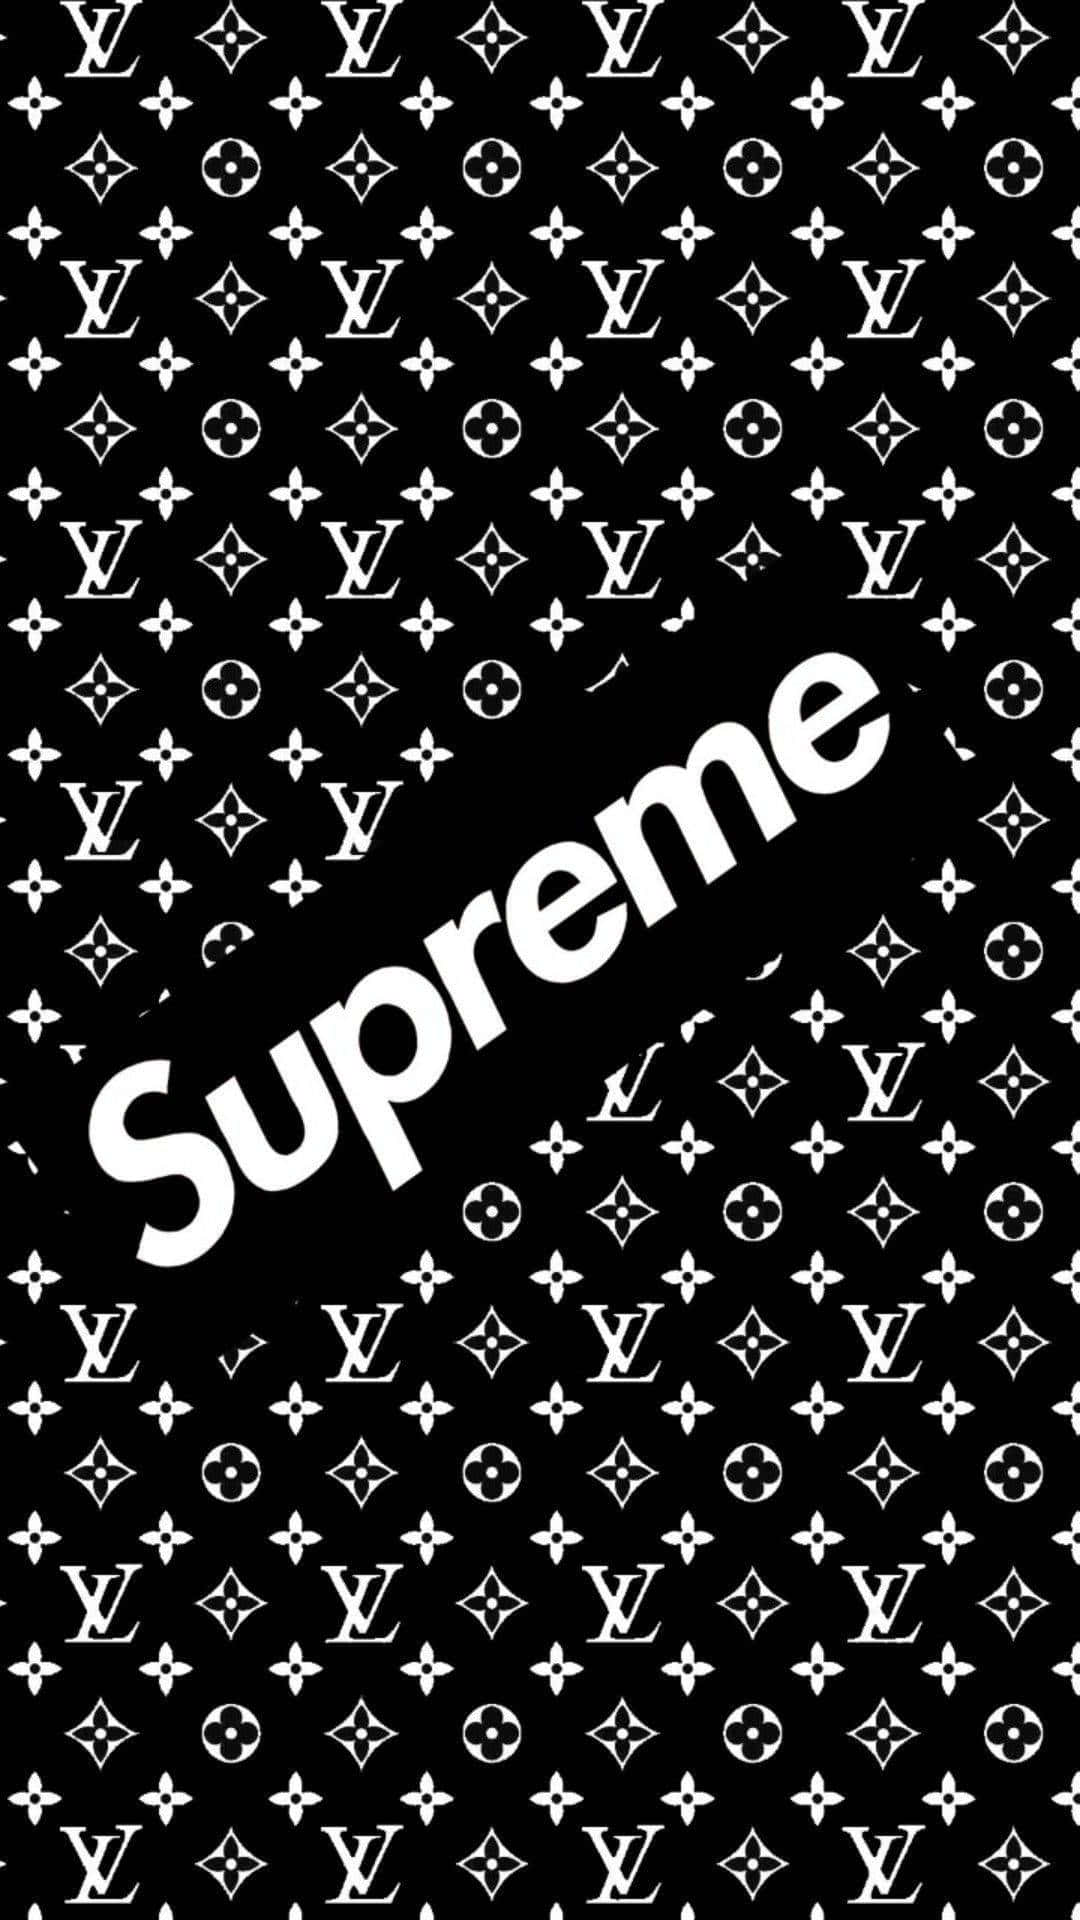 Download Supreme Logo against Black Background Wallpaper